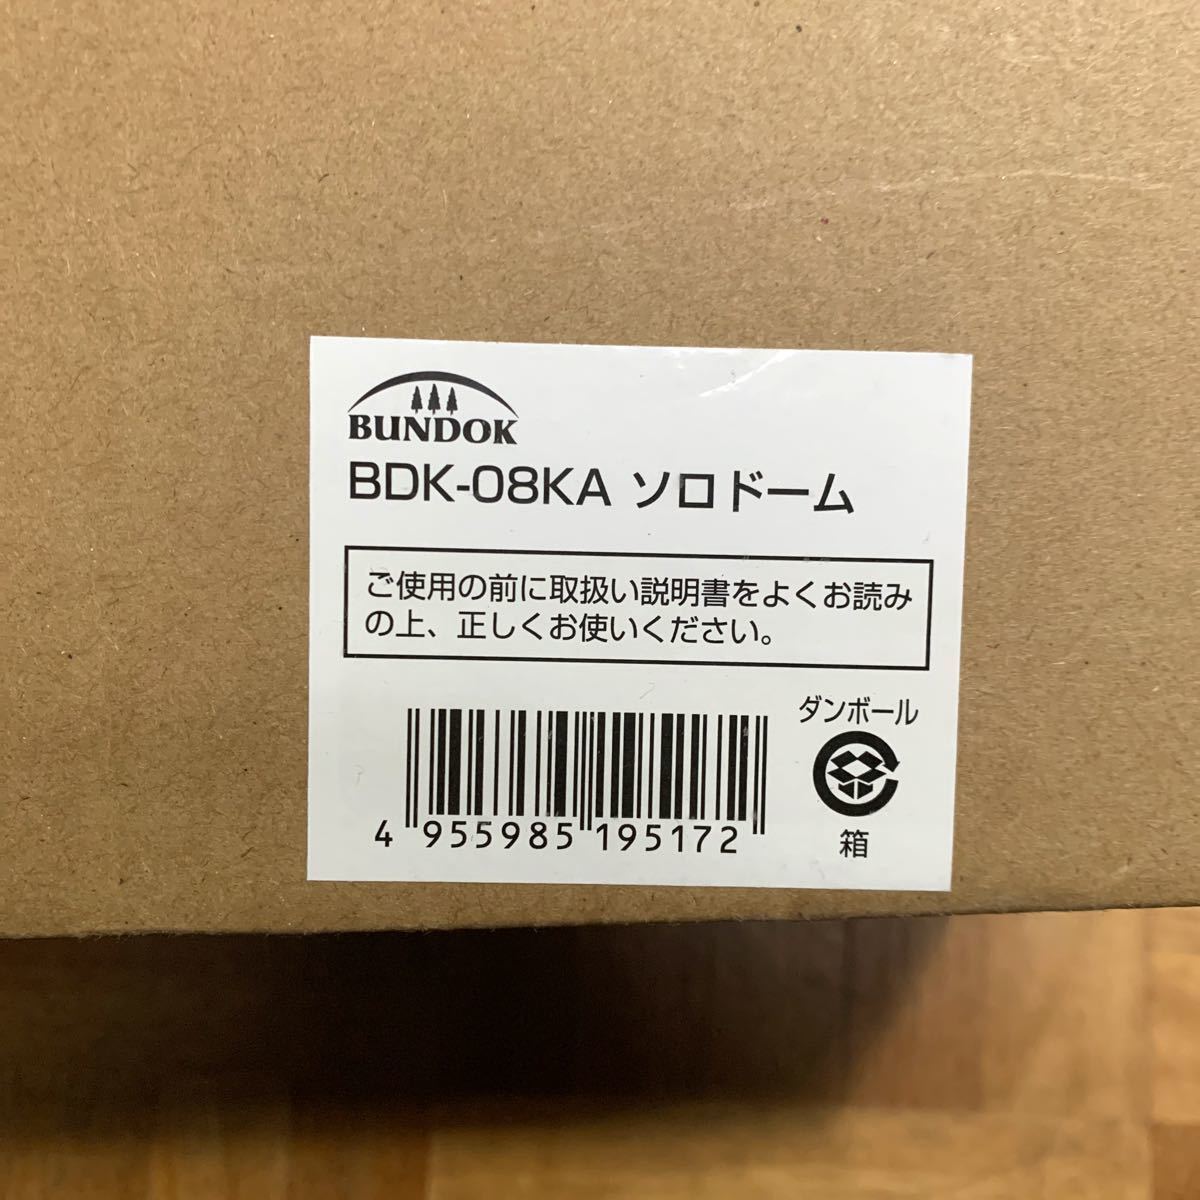 ★新品★送料無料★ BUNDOK(バンドック) ソロ ドーム 1 BDK-08 【1人用】 テント コンパクト収納 カーキ